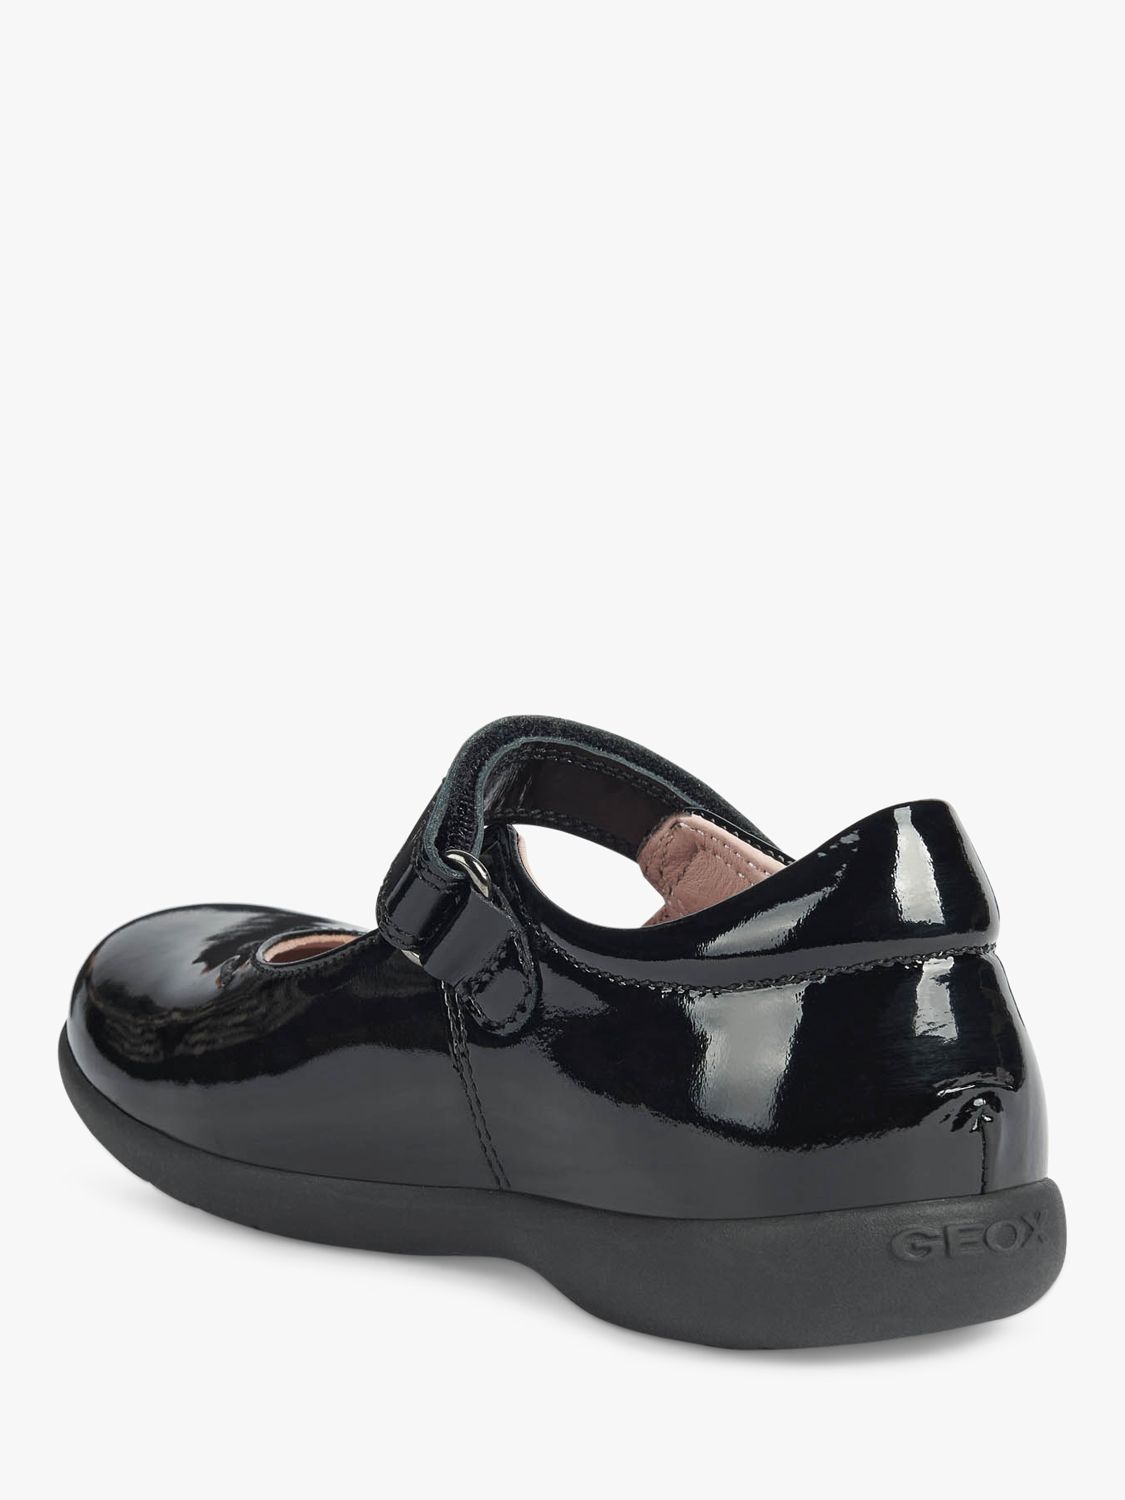 Buy Geox Kids' Naimara Mary Jane School Shoes, Black Online at johnlewis.com